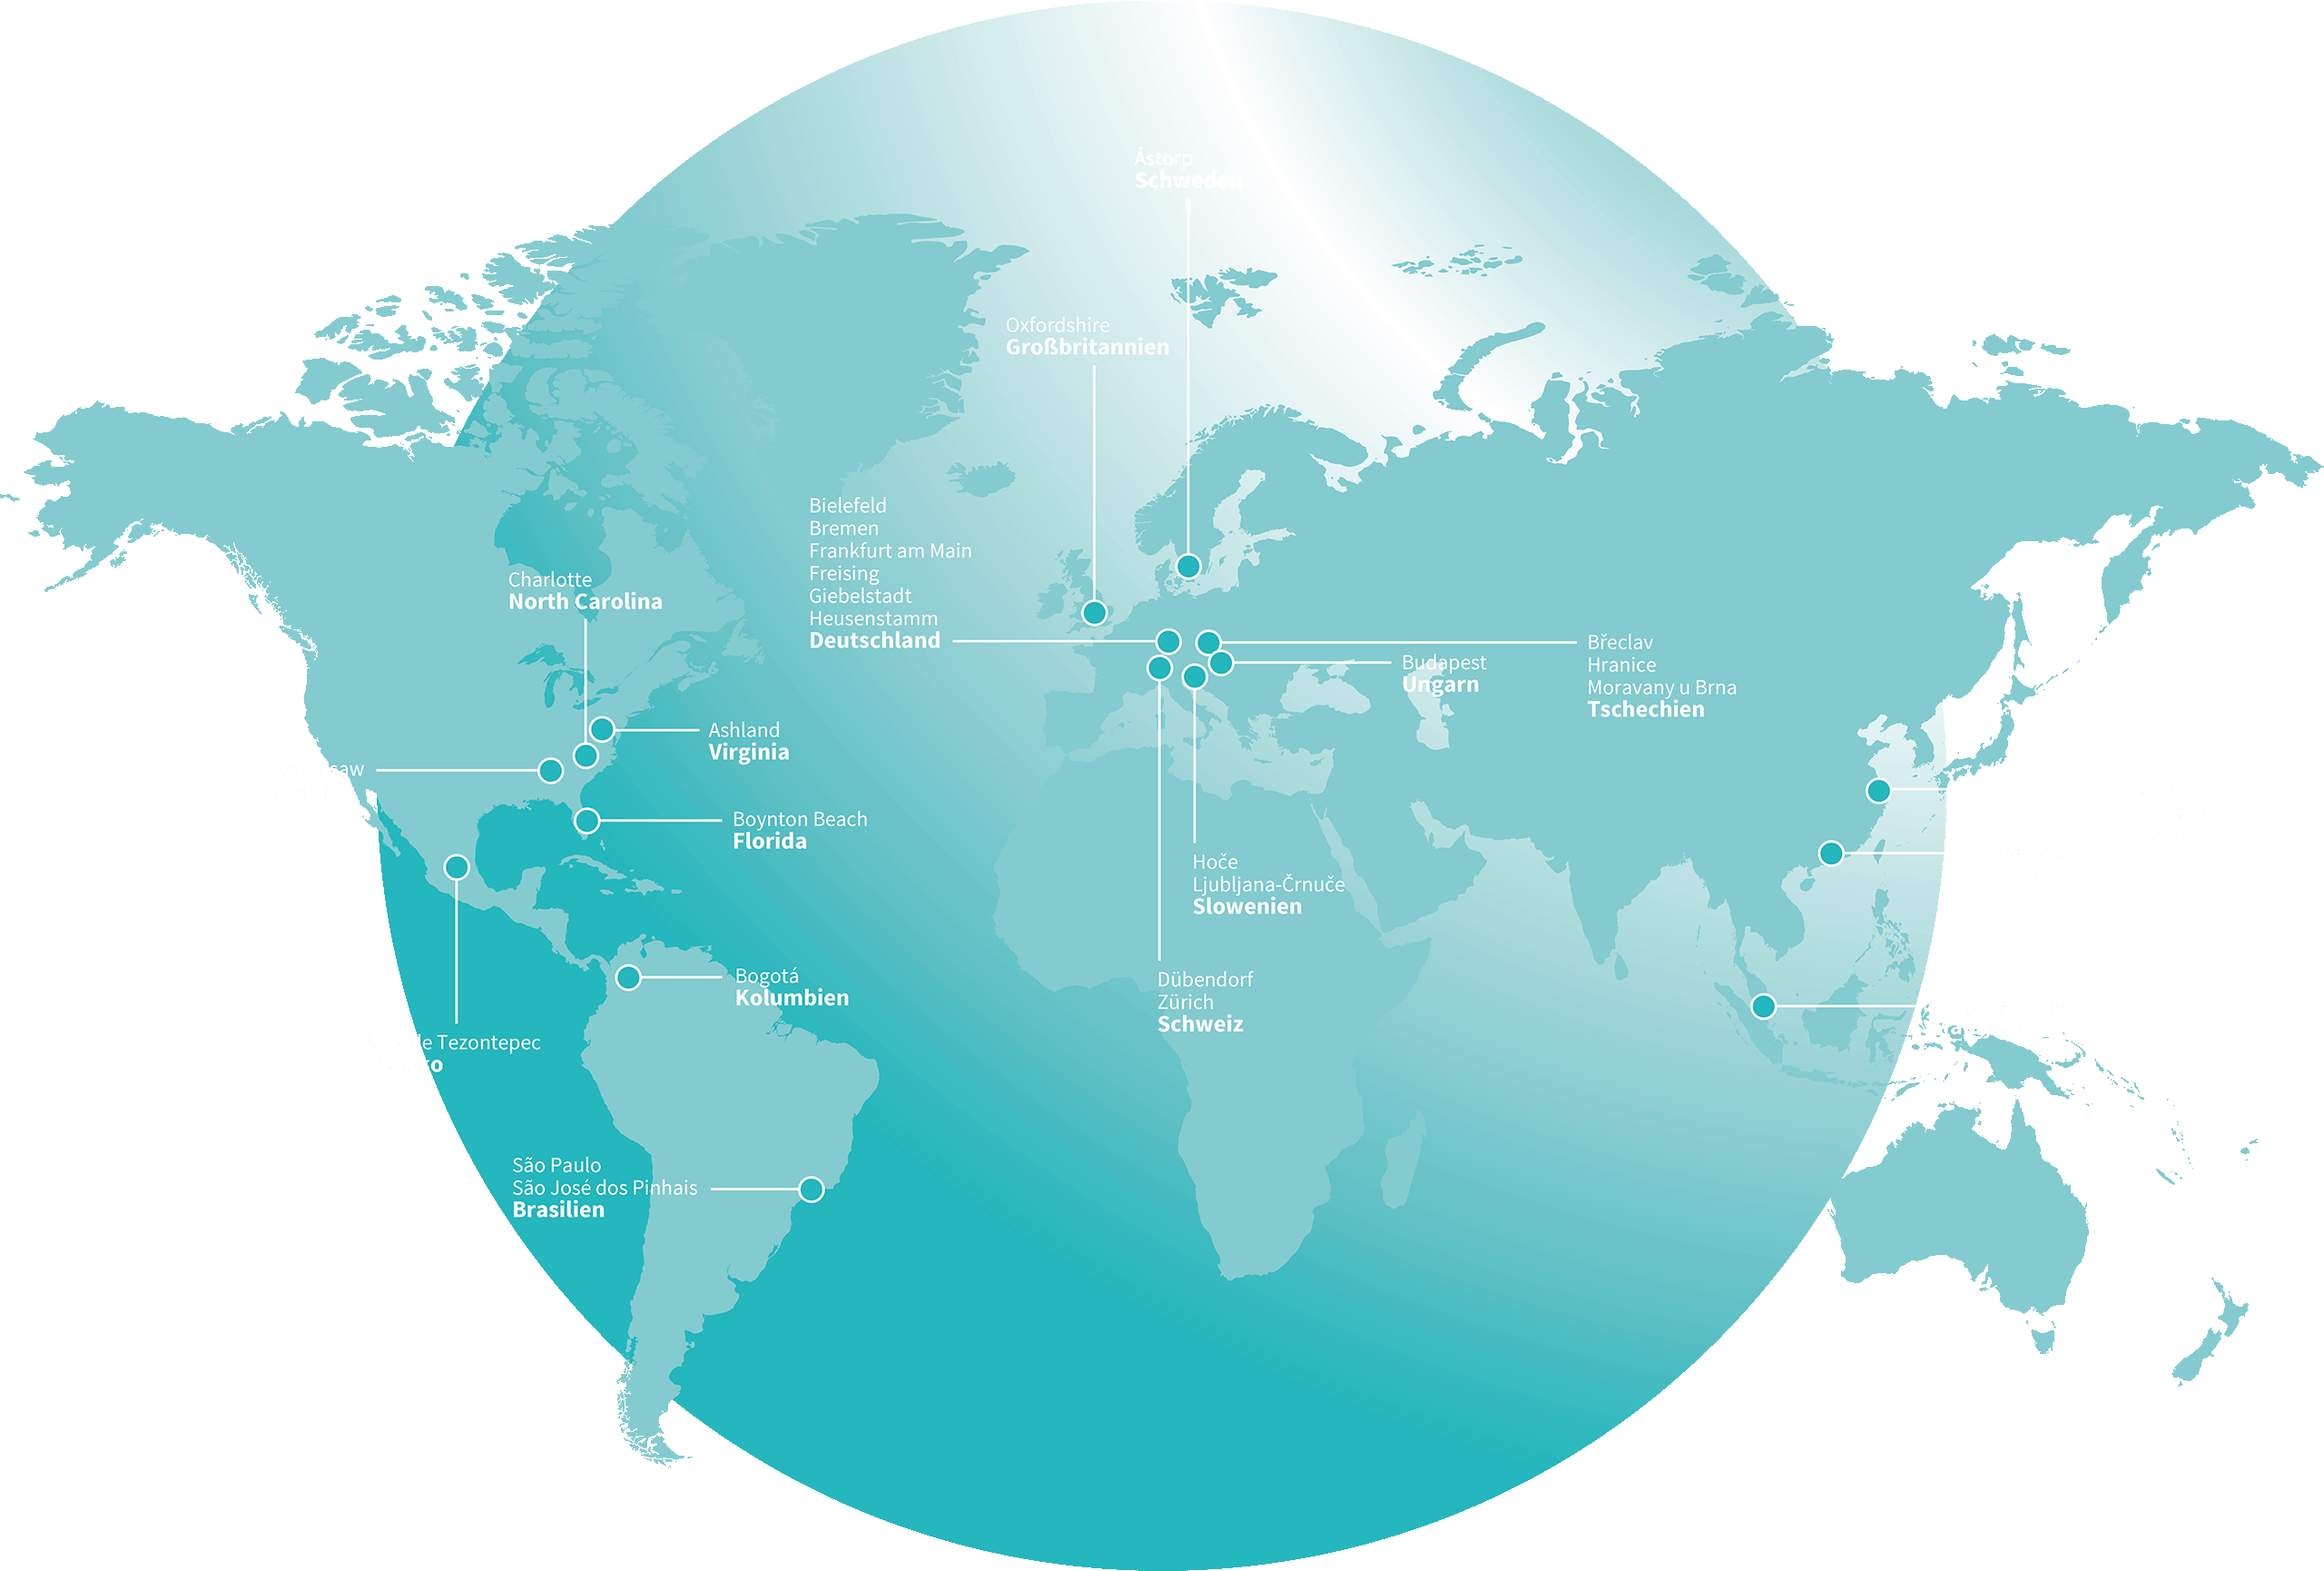 Citycom Weltkarte, die die Vernetzungspunkte zeigt